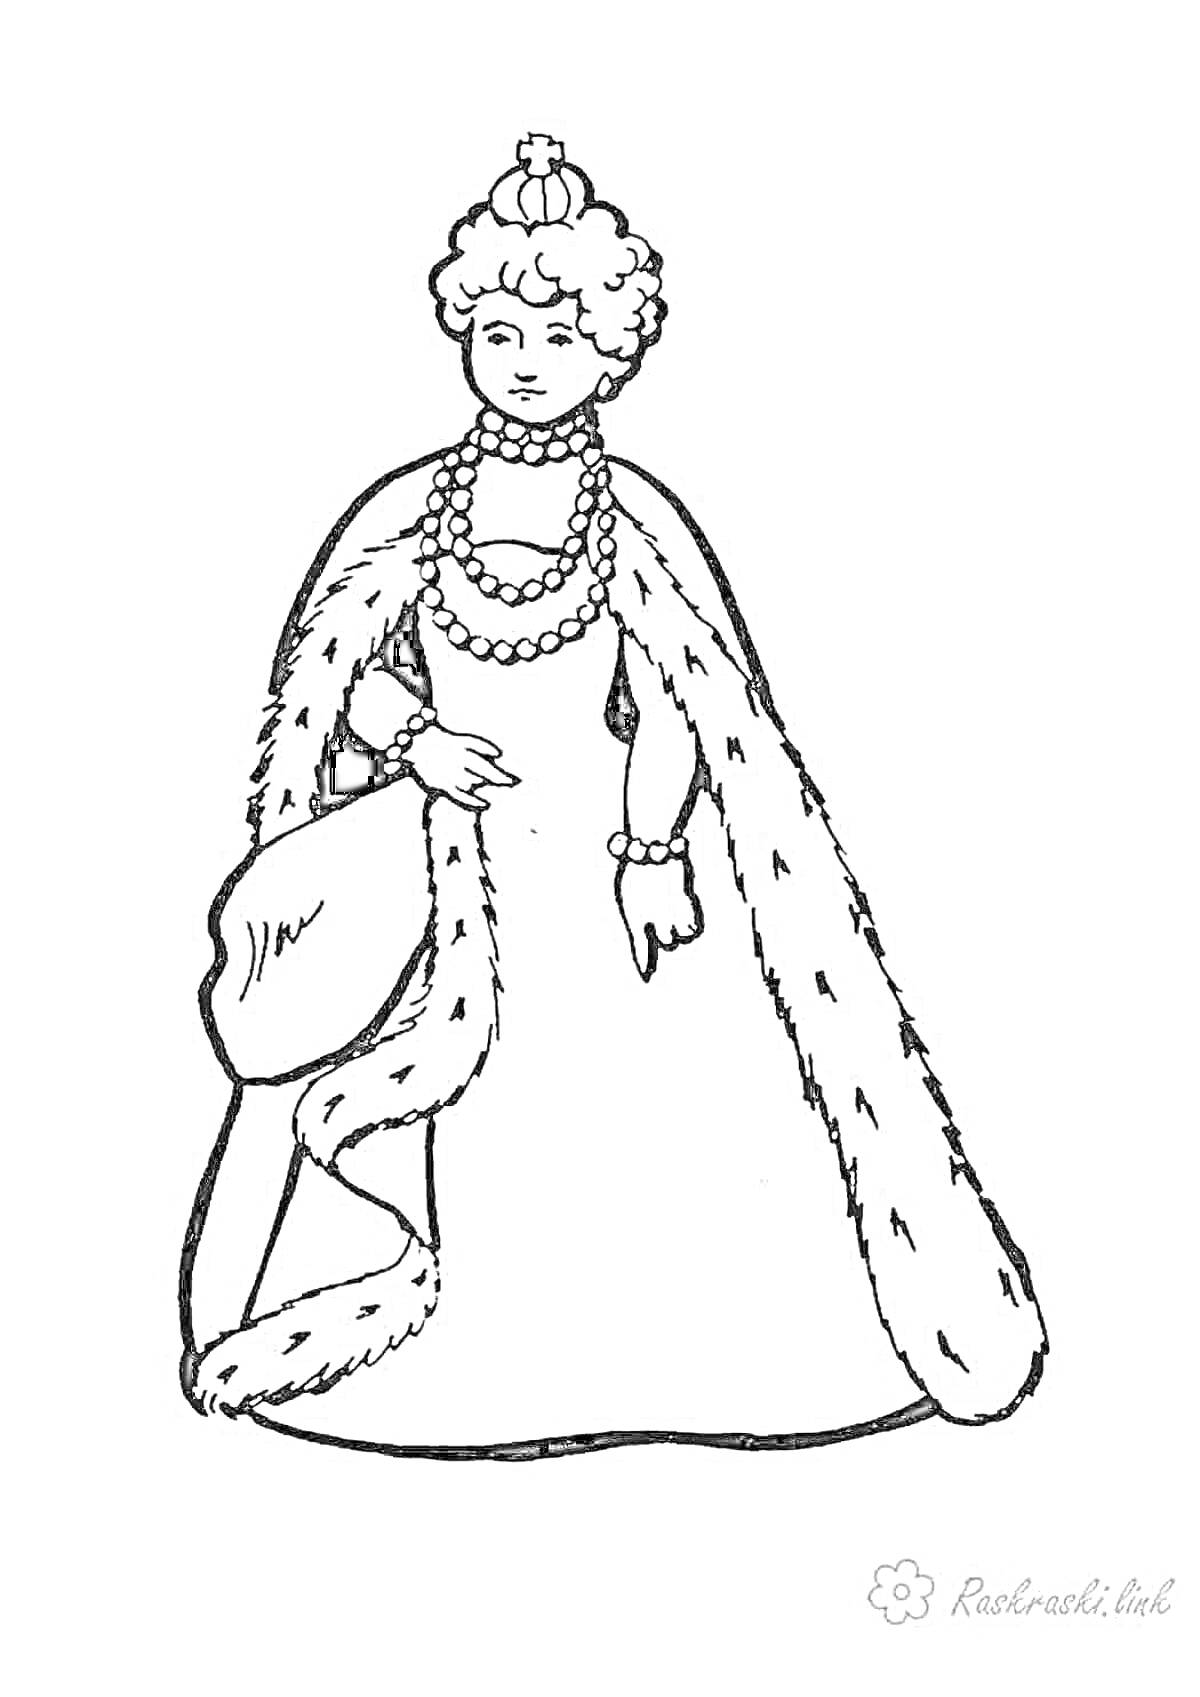 Раскраска Царица в короне с меховой накидкой и украшениями на шее